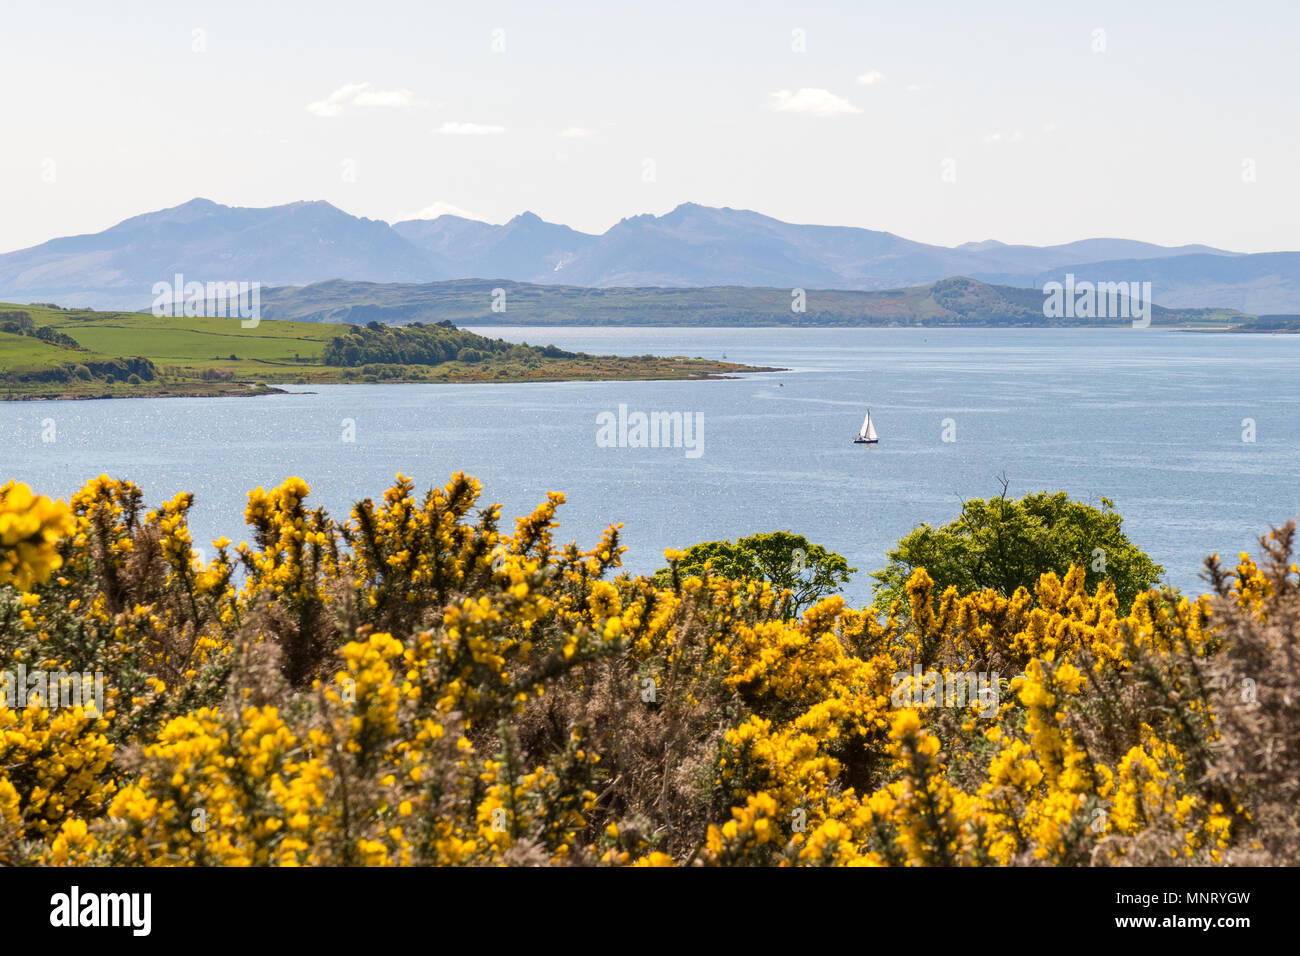 Anzeigen von großer Cumbrae, Bute und die Insel Arran über den Firth of Clyde von Largs, North Ayrshire, Schottland, Großbritannien Stockfoto